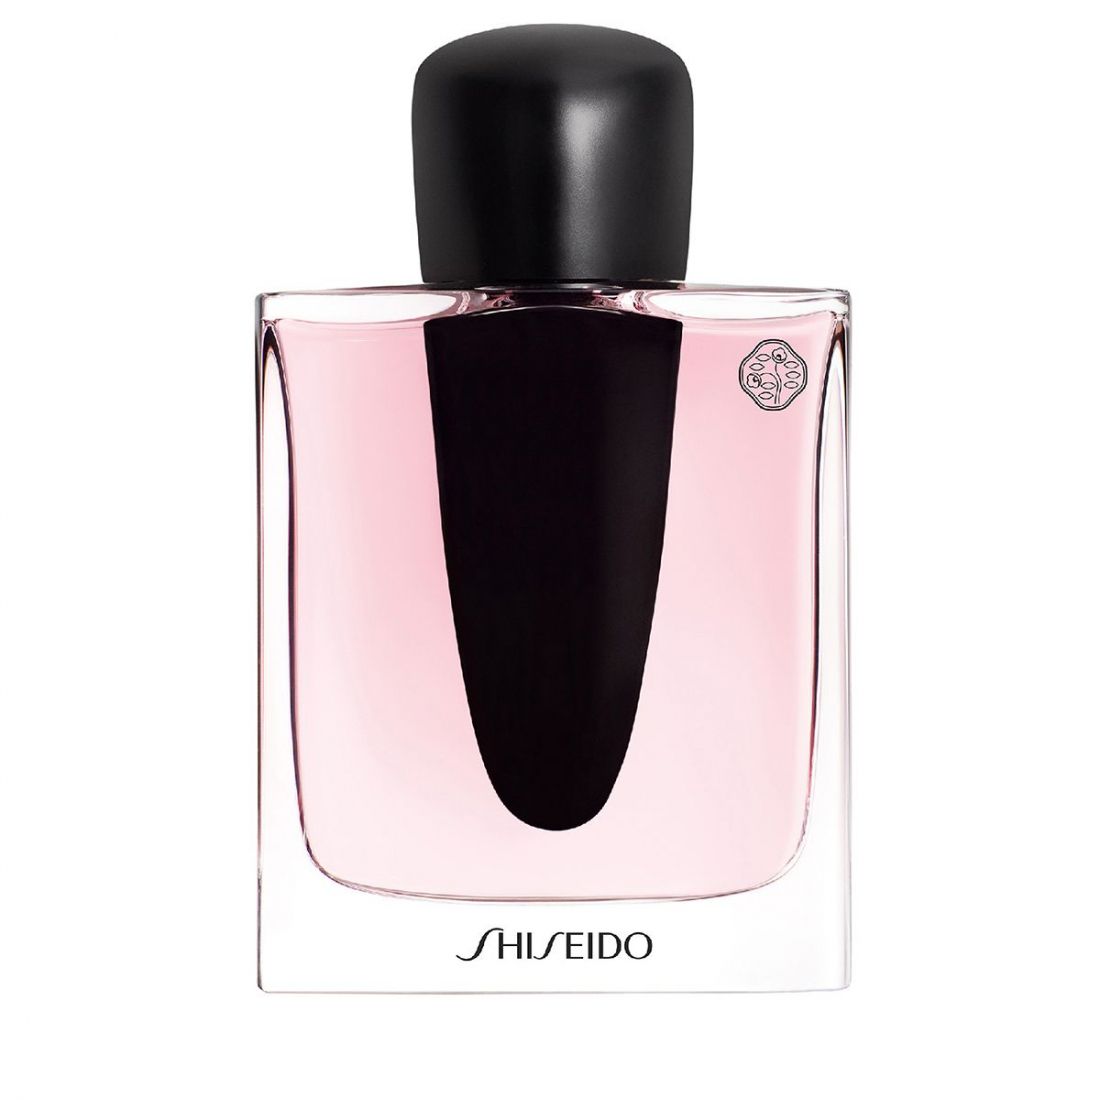 Shiseido - Eau de parfum 'Ginza' - 90 ml